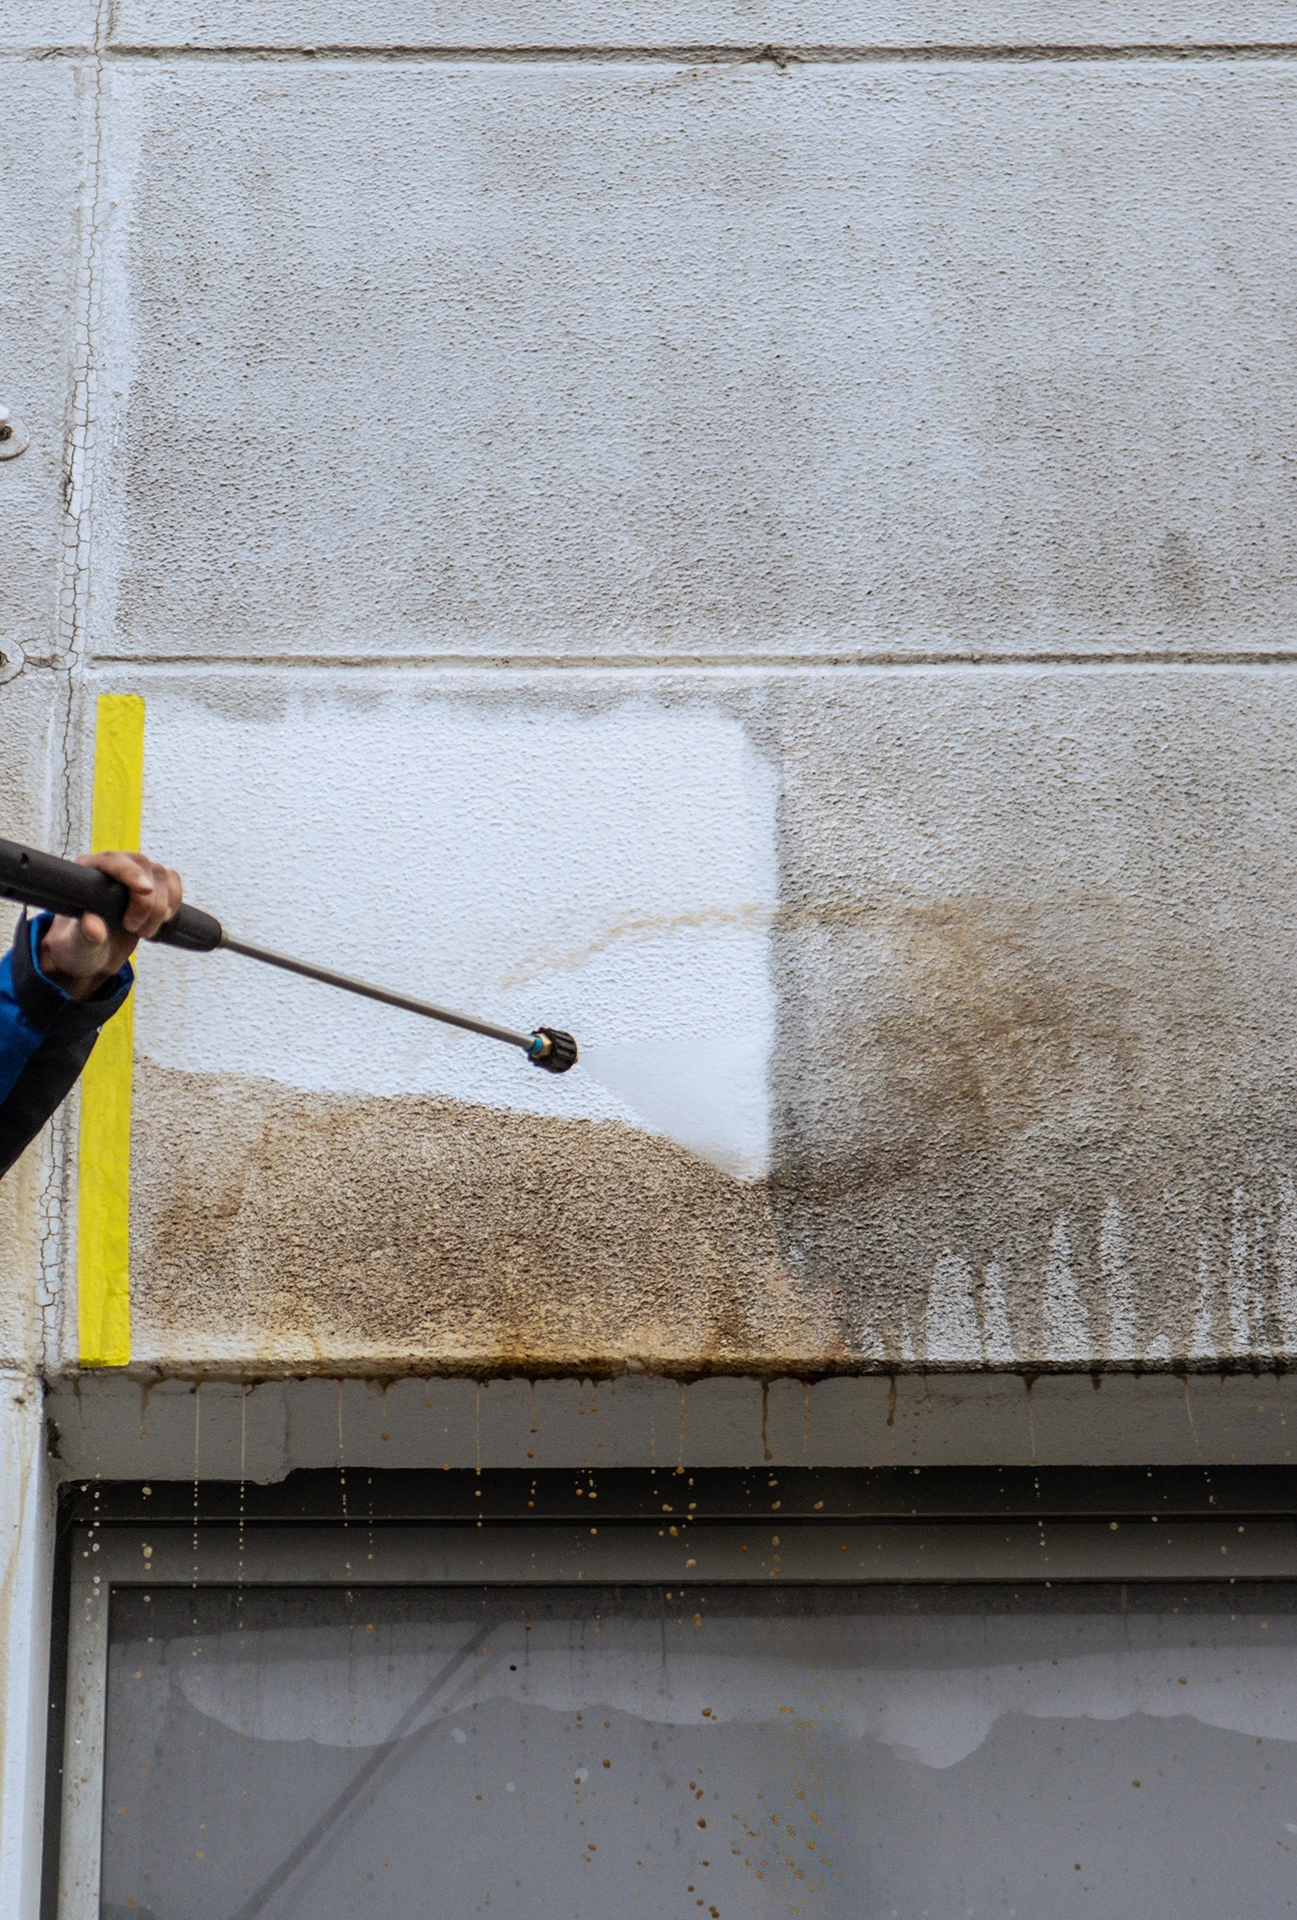 Das Bild zeigt einen Mitarbeiter der Firma Albo-Servie, der eine Probereinigung an einer Fassade durchführt.